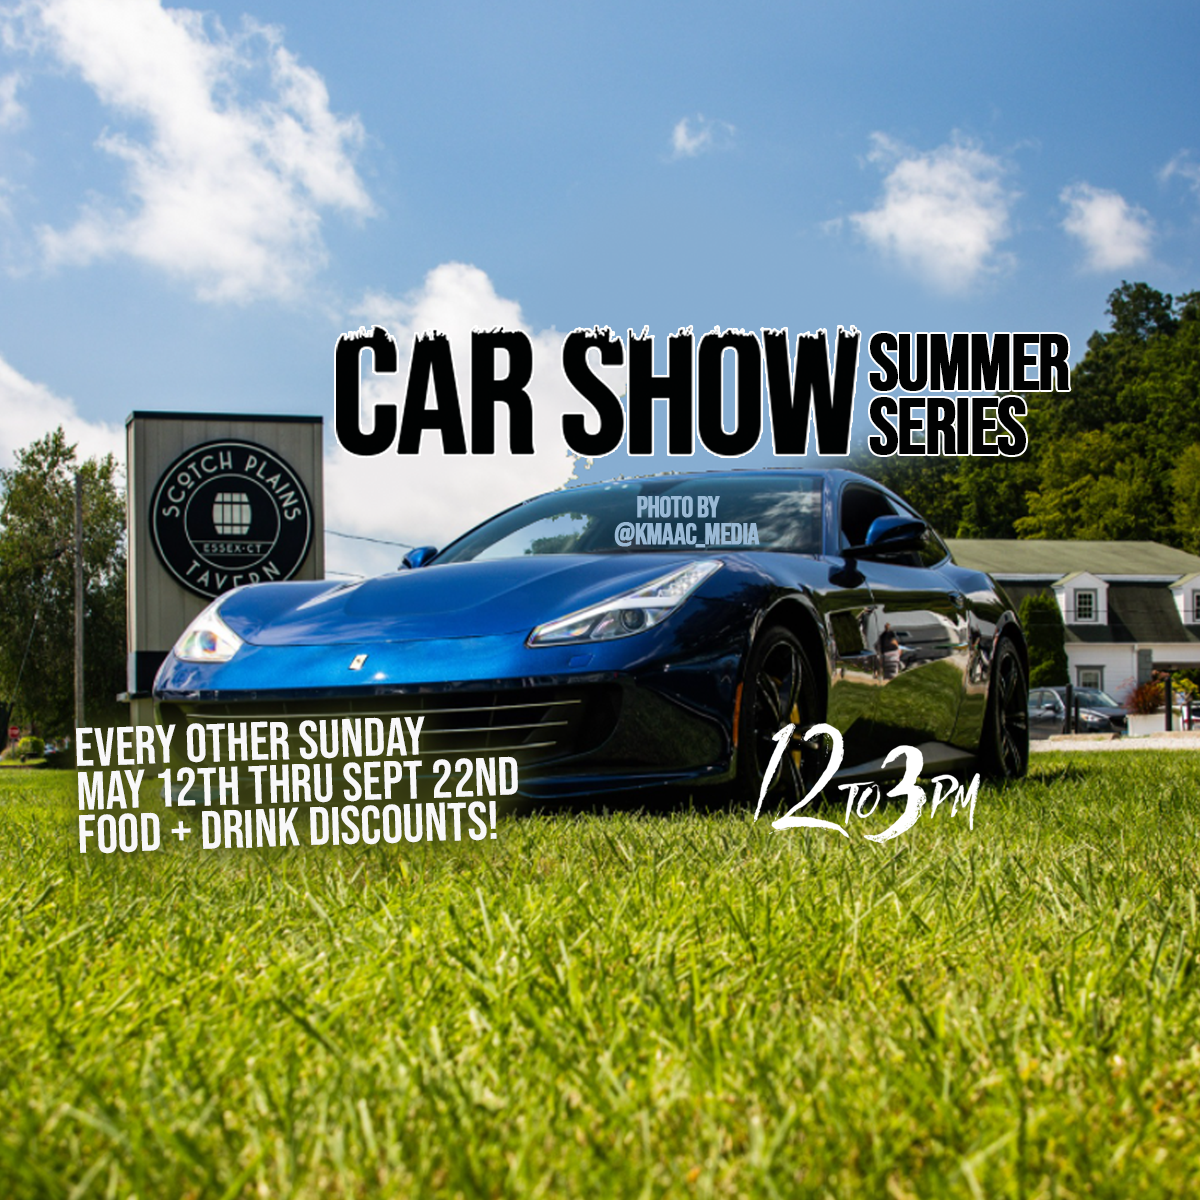 Scotch Plains Tavern Car Show Summer Series